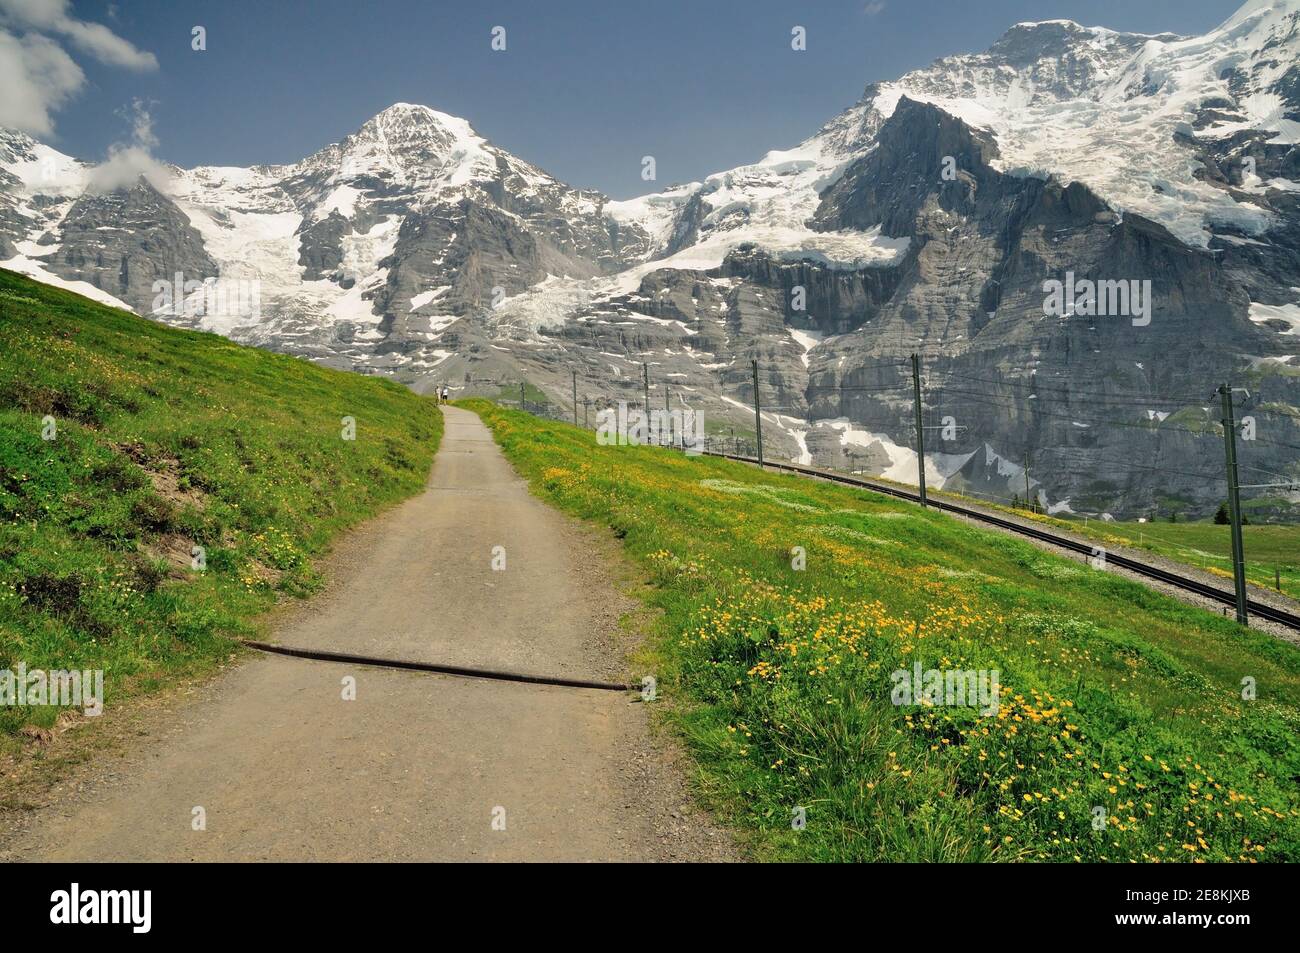 Der Bergweg von der Kleinen Scheidegg zur Wengernalp bietet mit der Wengernalpbahn einen ungestörten Blick auf Eiger, Mönch und Jungfrau. Stockfoto